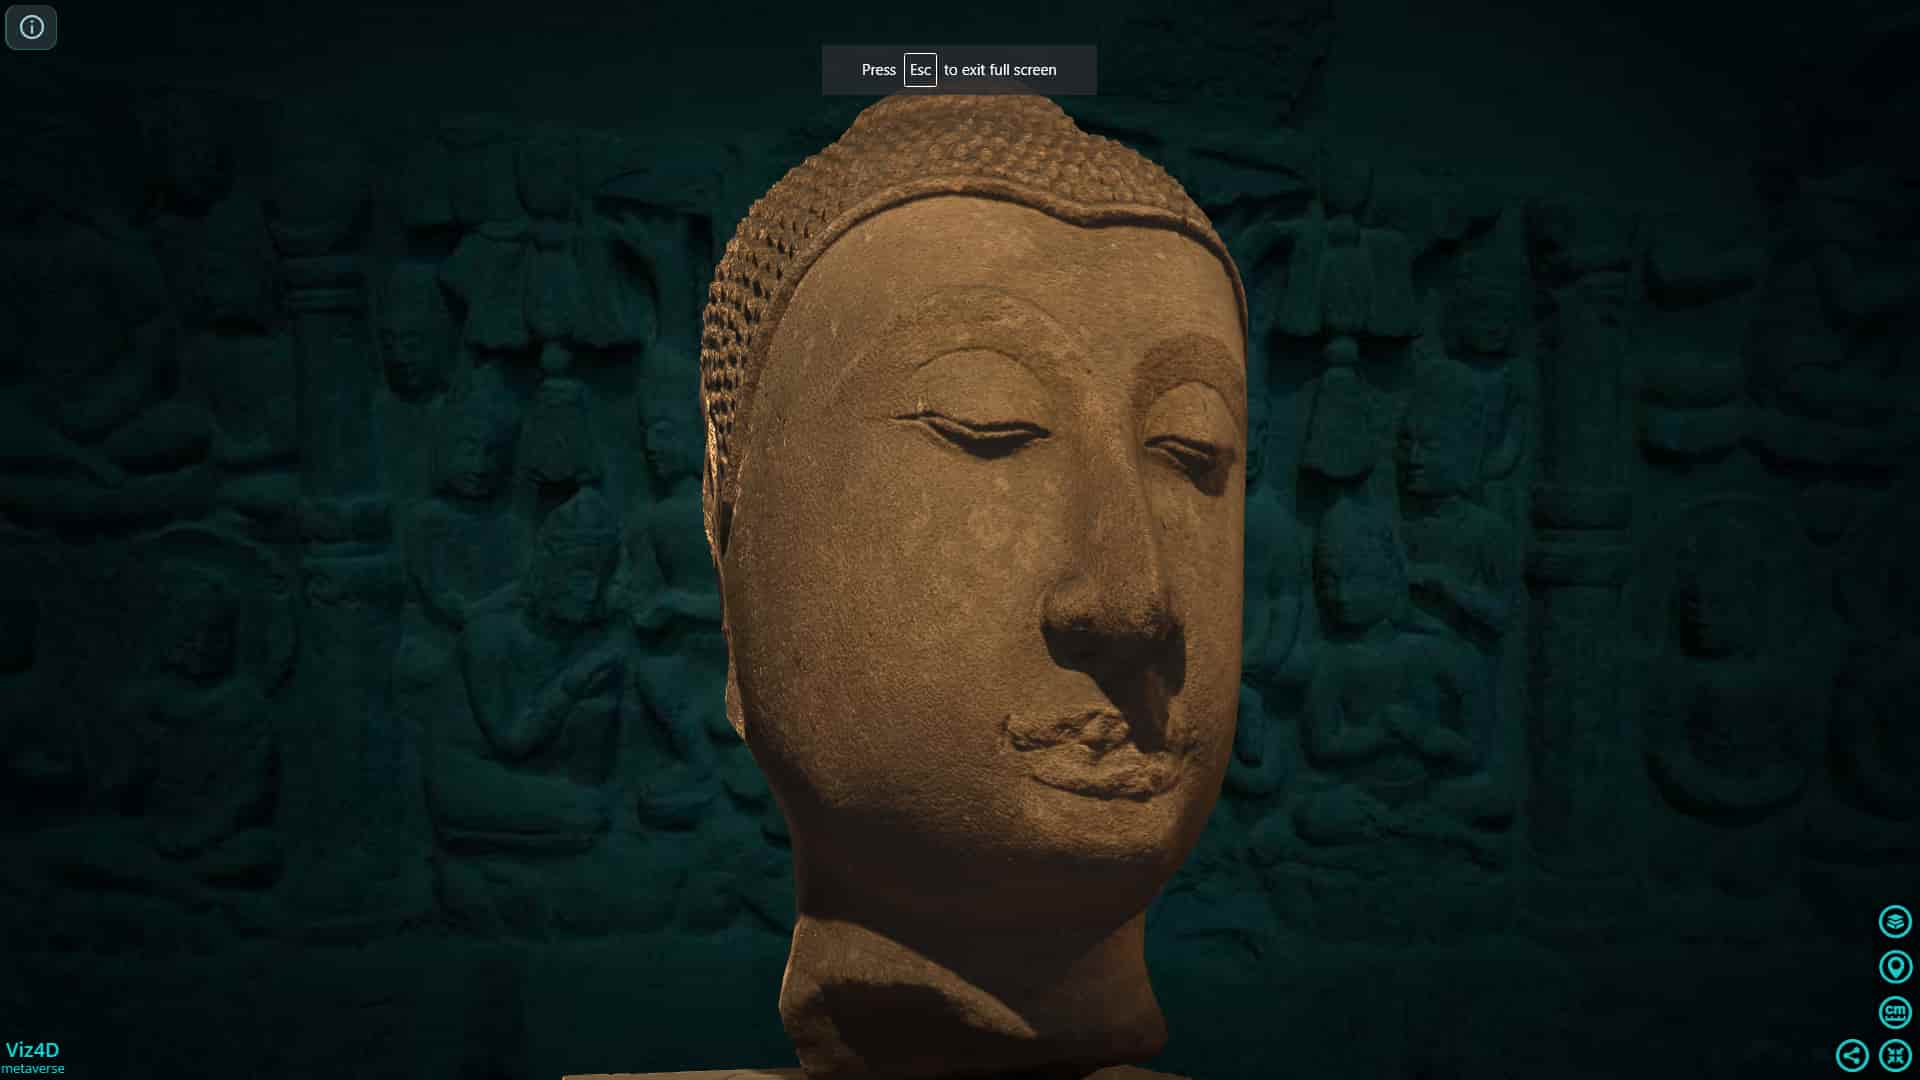 Đức Phật Thái lan thế kỷ 17 - Bảo tàng Cinquantenaire.